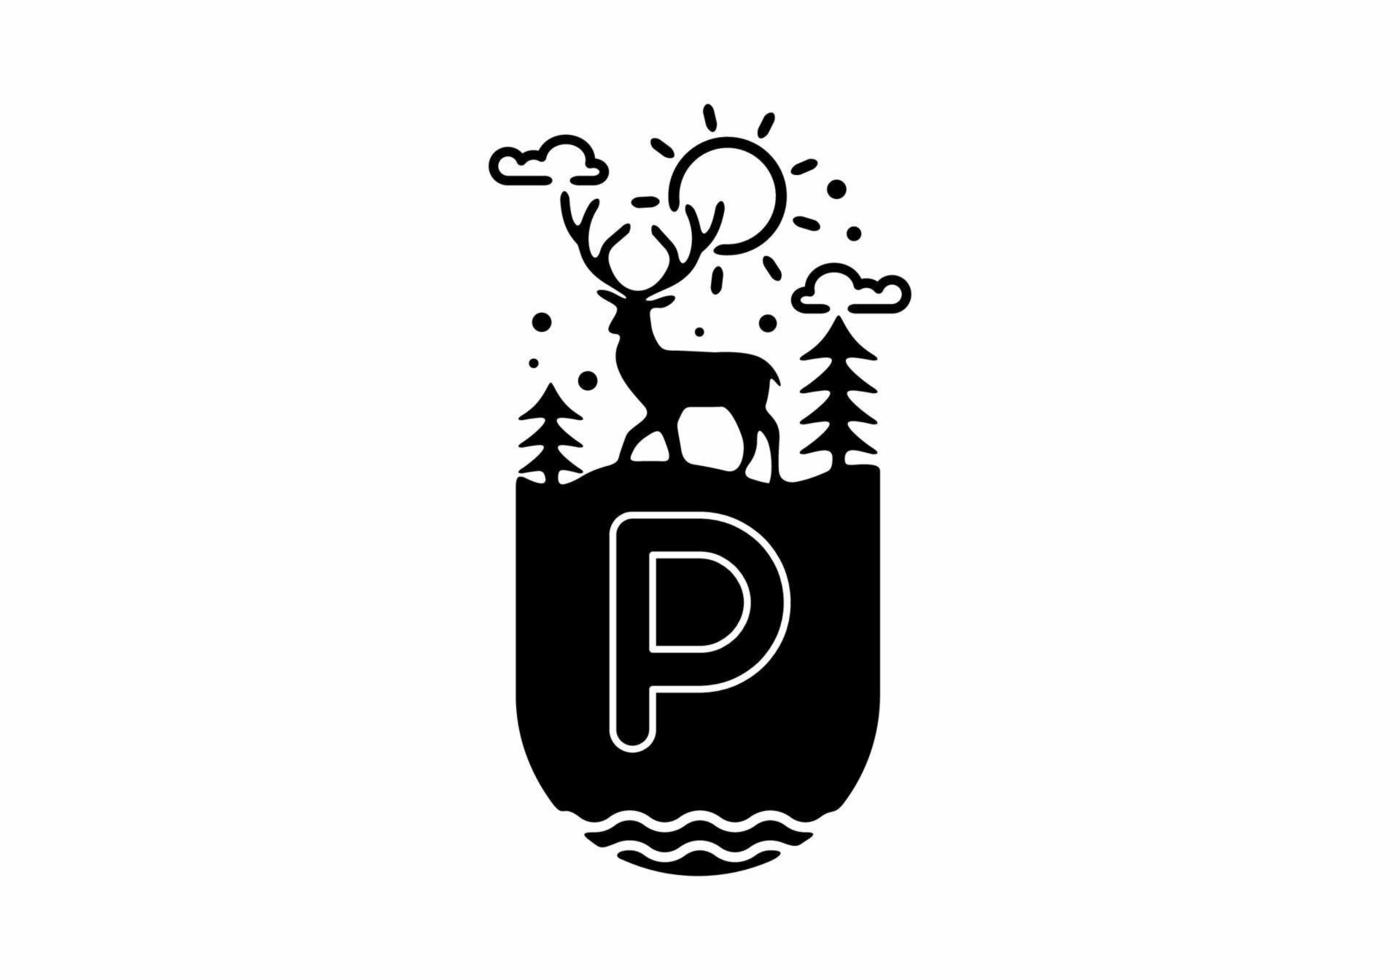 zwarte lijn kunst illustratie van herten badge met p aanvankelijke naam in het midden vector